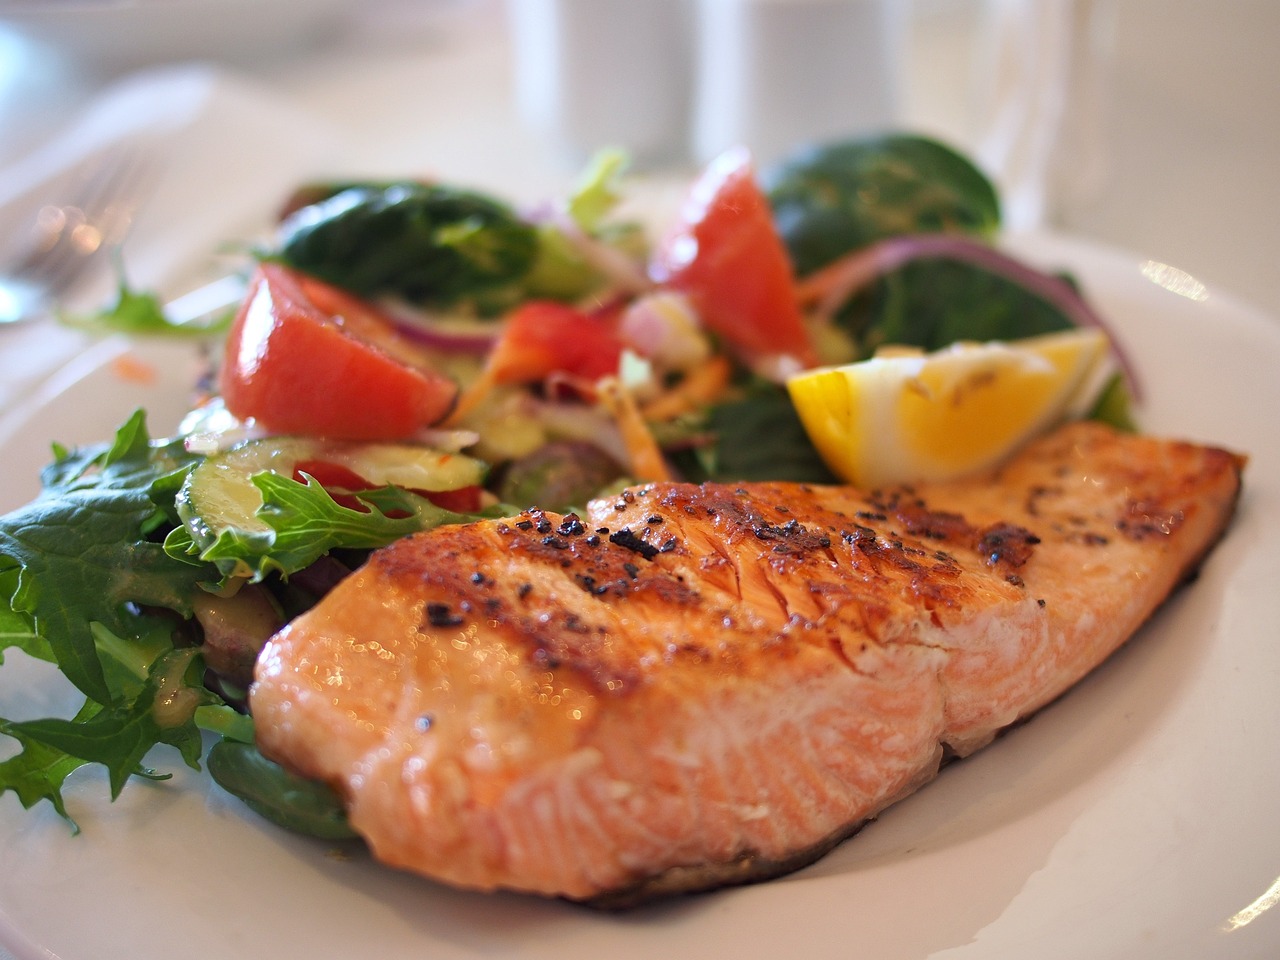 Catering dietetyczny - jak zadbać o zdrową i smaczną dietę?